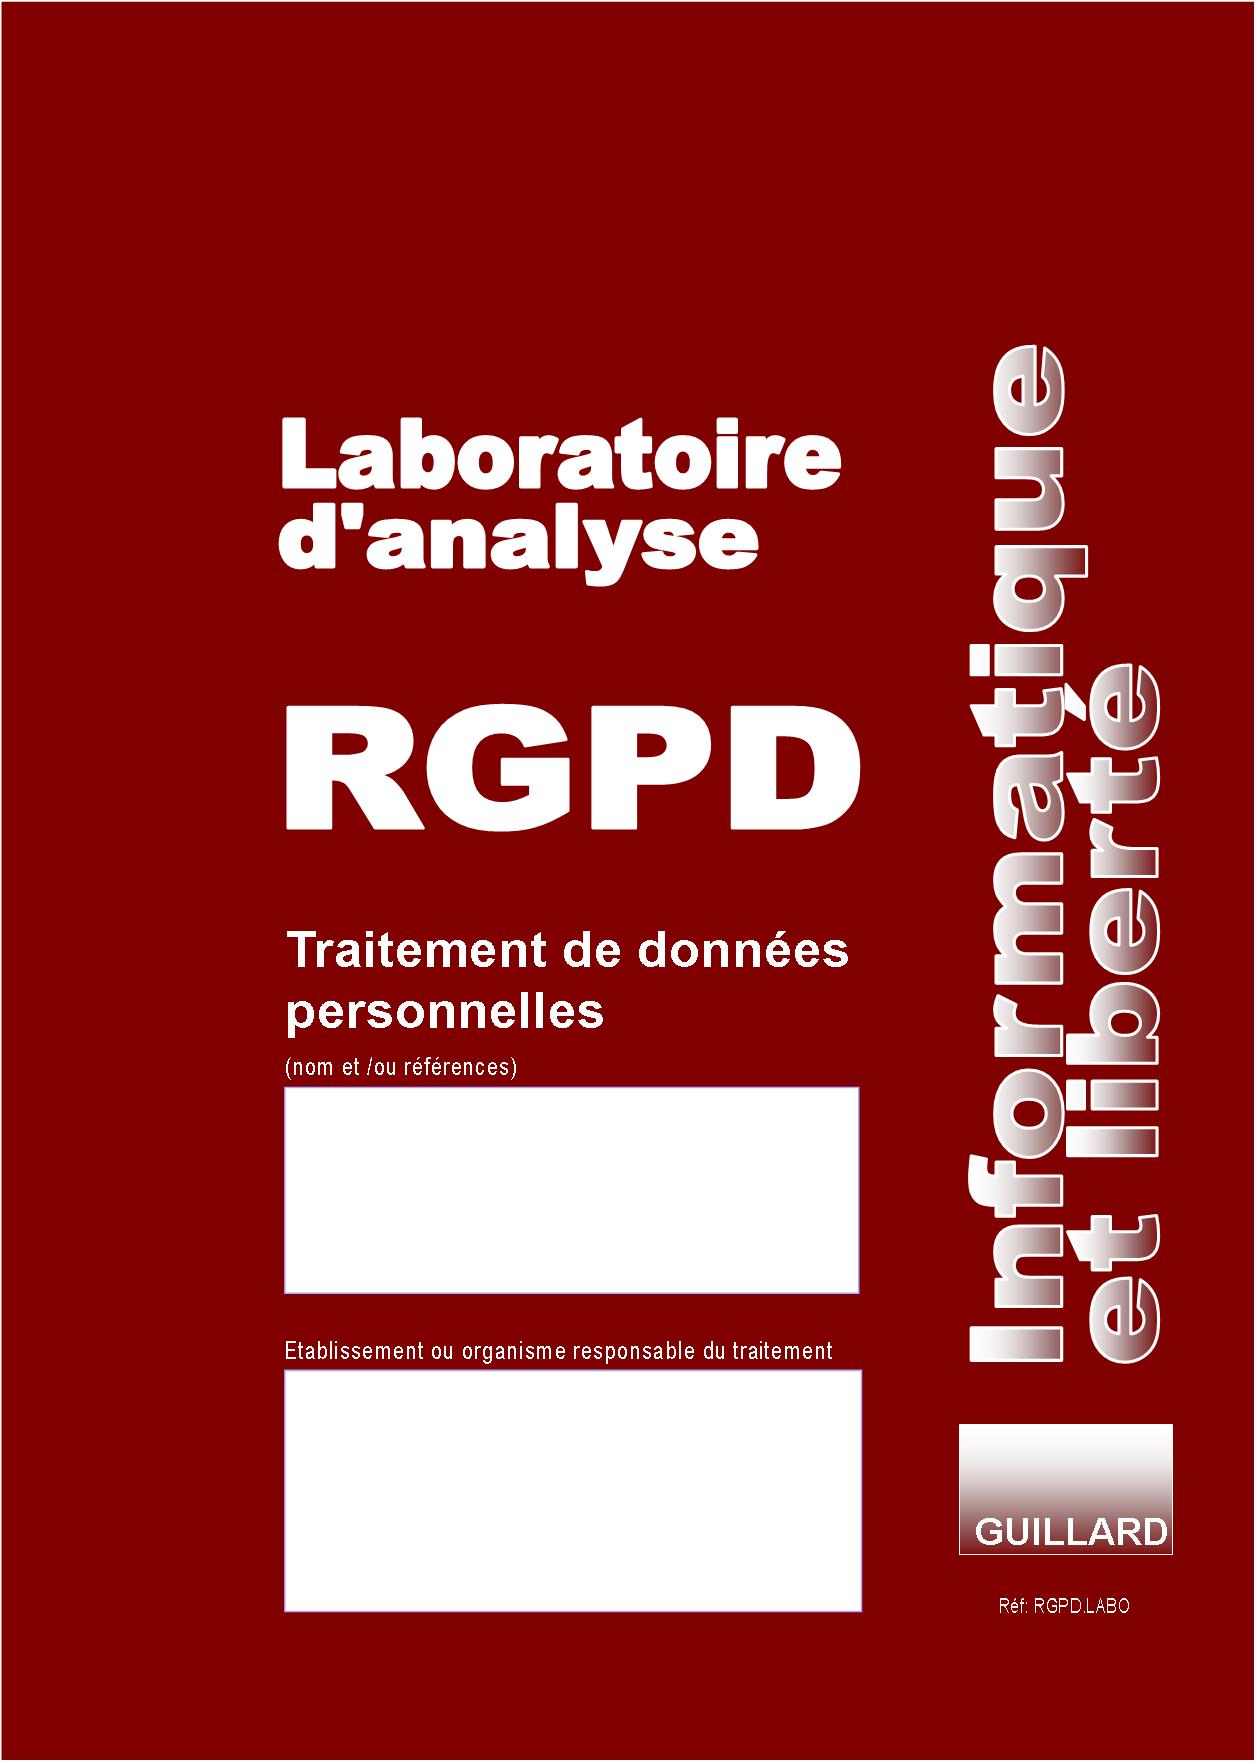 Registre RGPD LABORATOIRE D'ANALYSES de TRAITEMENT DES DONNEES PERSONNELLES - RGPD.LABO